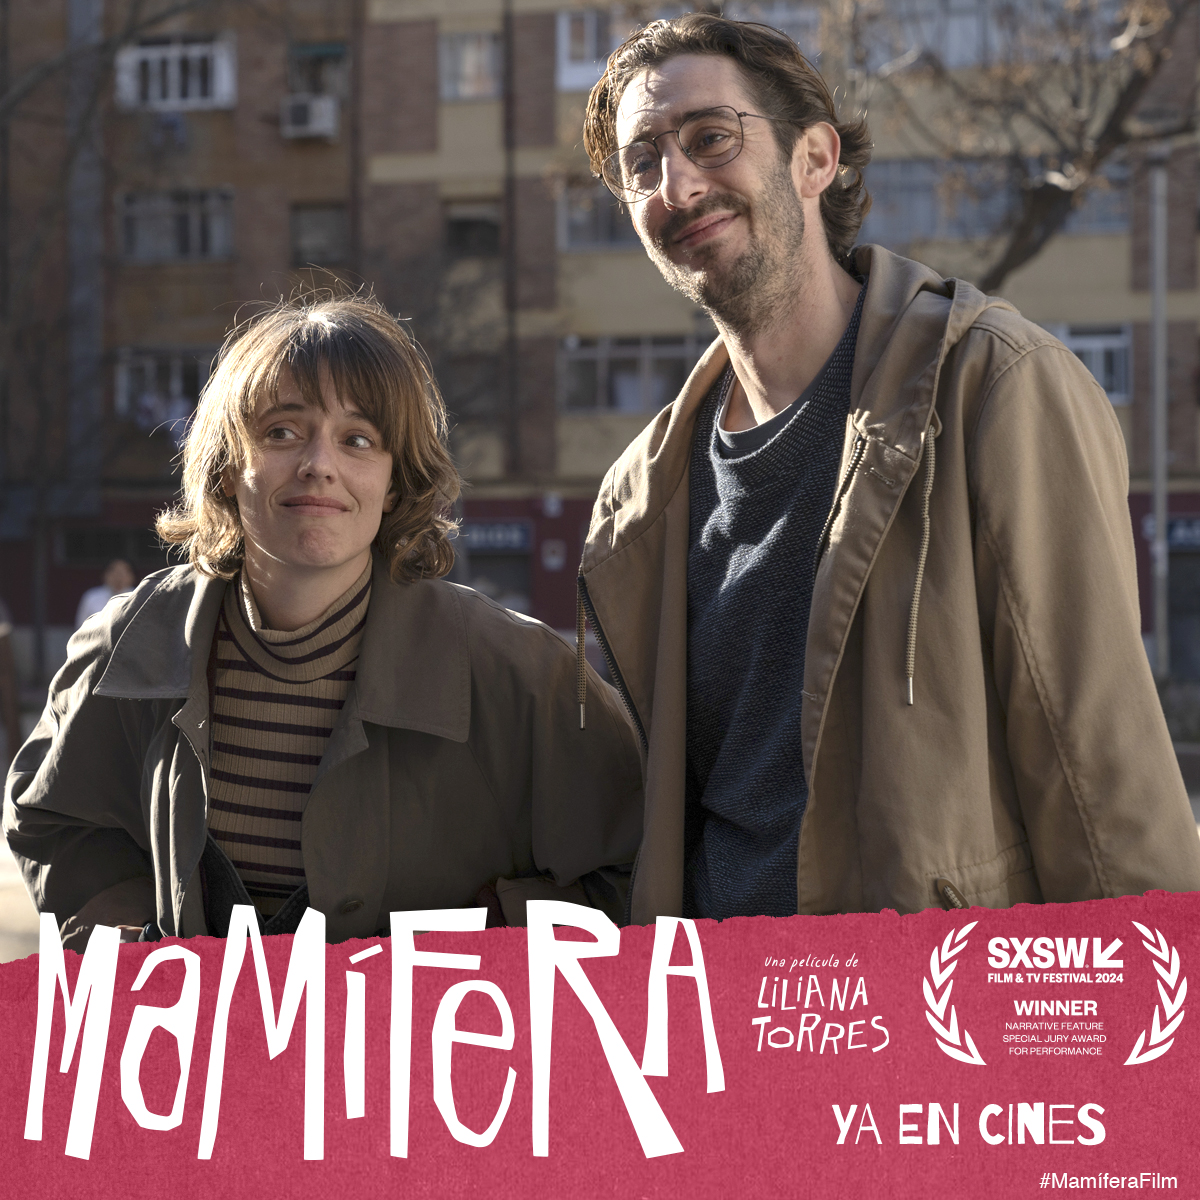 Aquesta parella és una d'aquelles que deixen empremta 😍. La Maria Rodríguez Soto i l'Enric Auquer protagonitzen #MamíferaFilm, una de les pel·lícules espanyoles més reconegudes i elogiades de l'any. 🎬 Cerca el teu cinema més proper 👉 bit.ly/cines-mamifera